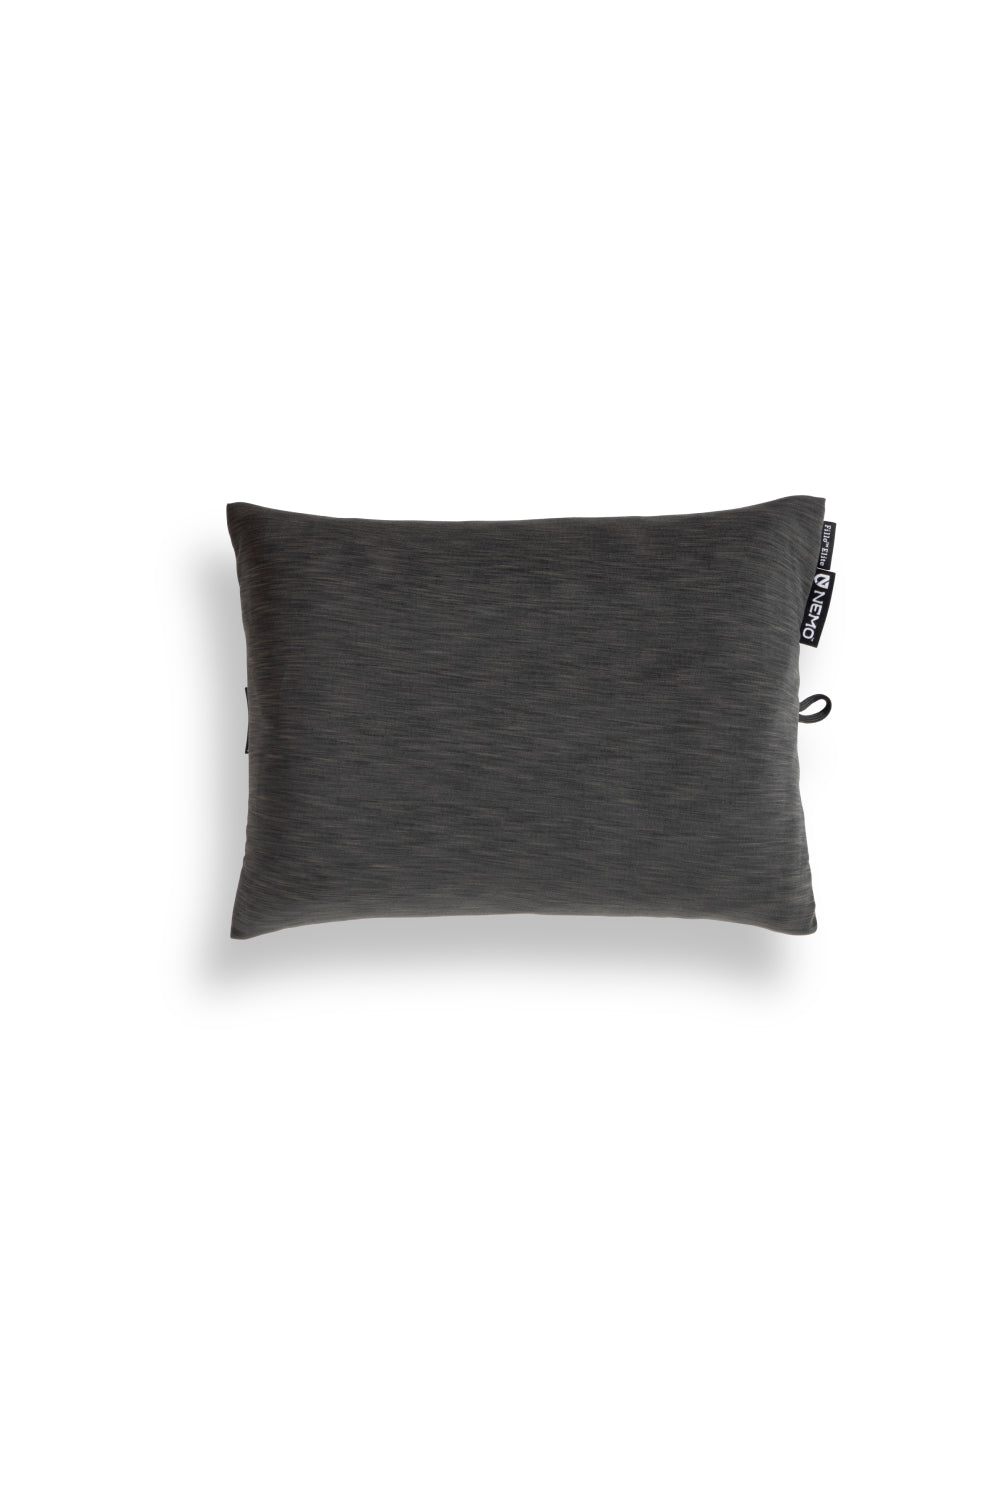 Nemo Fillo Elite Pillow - Midnight Grey | Coffee Outdoors